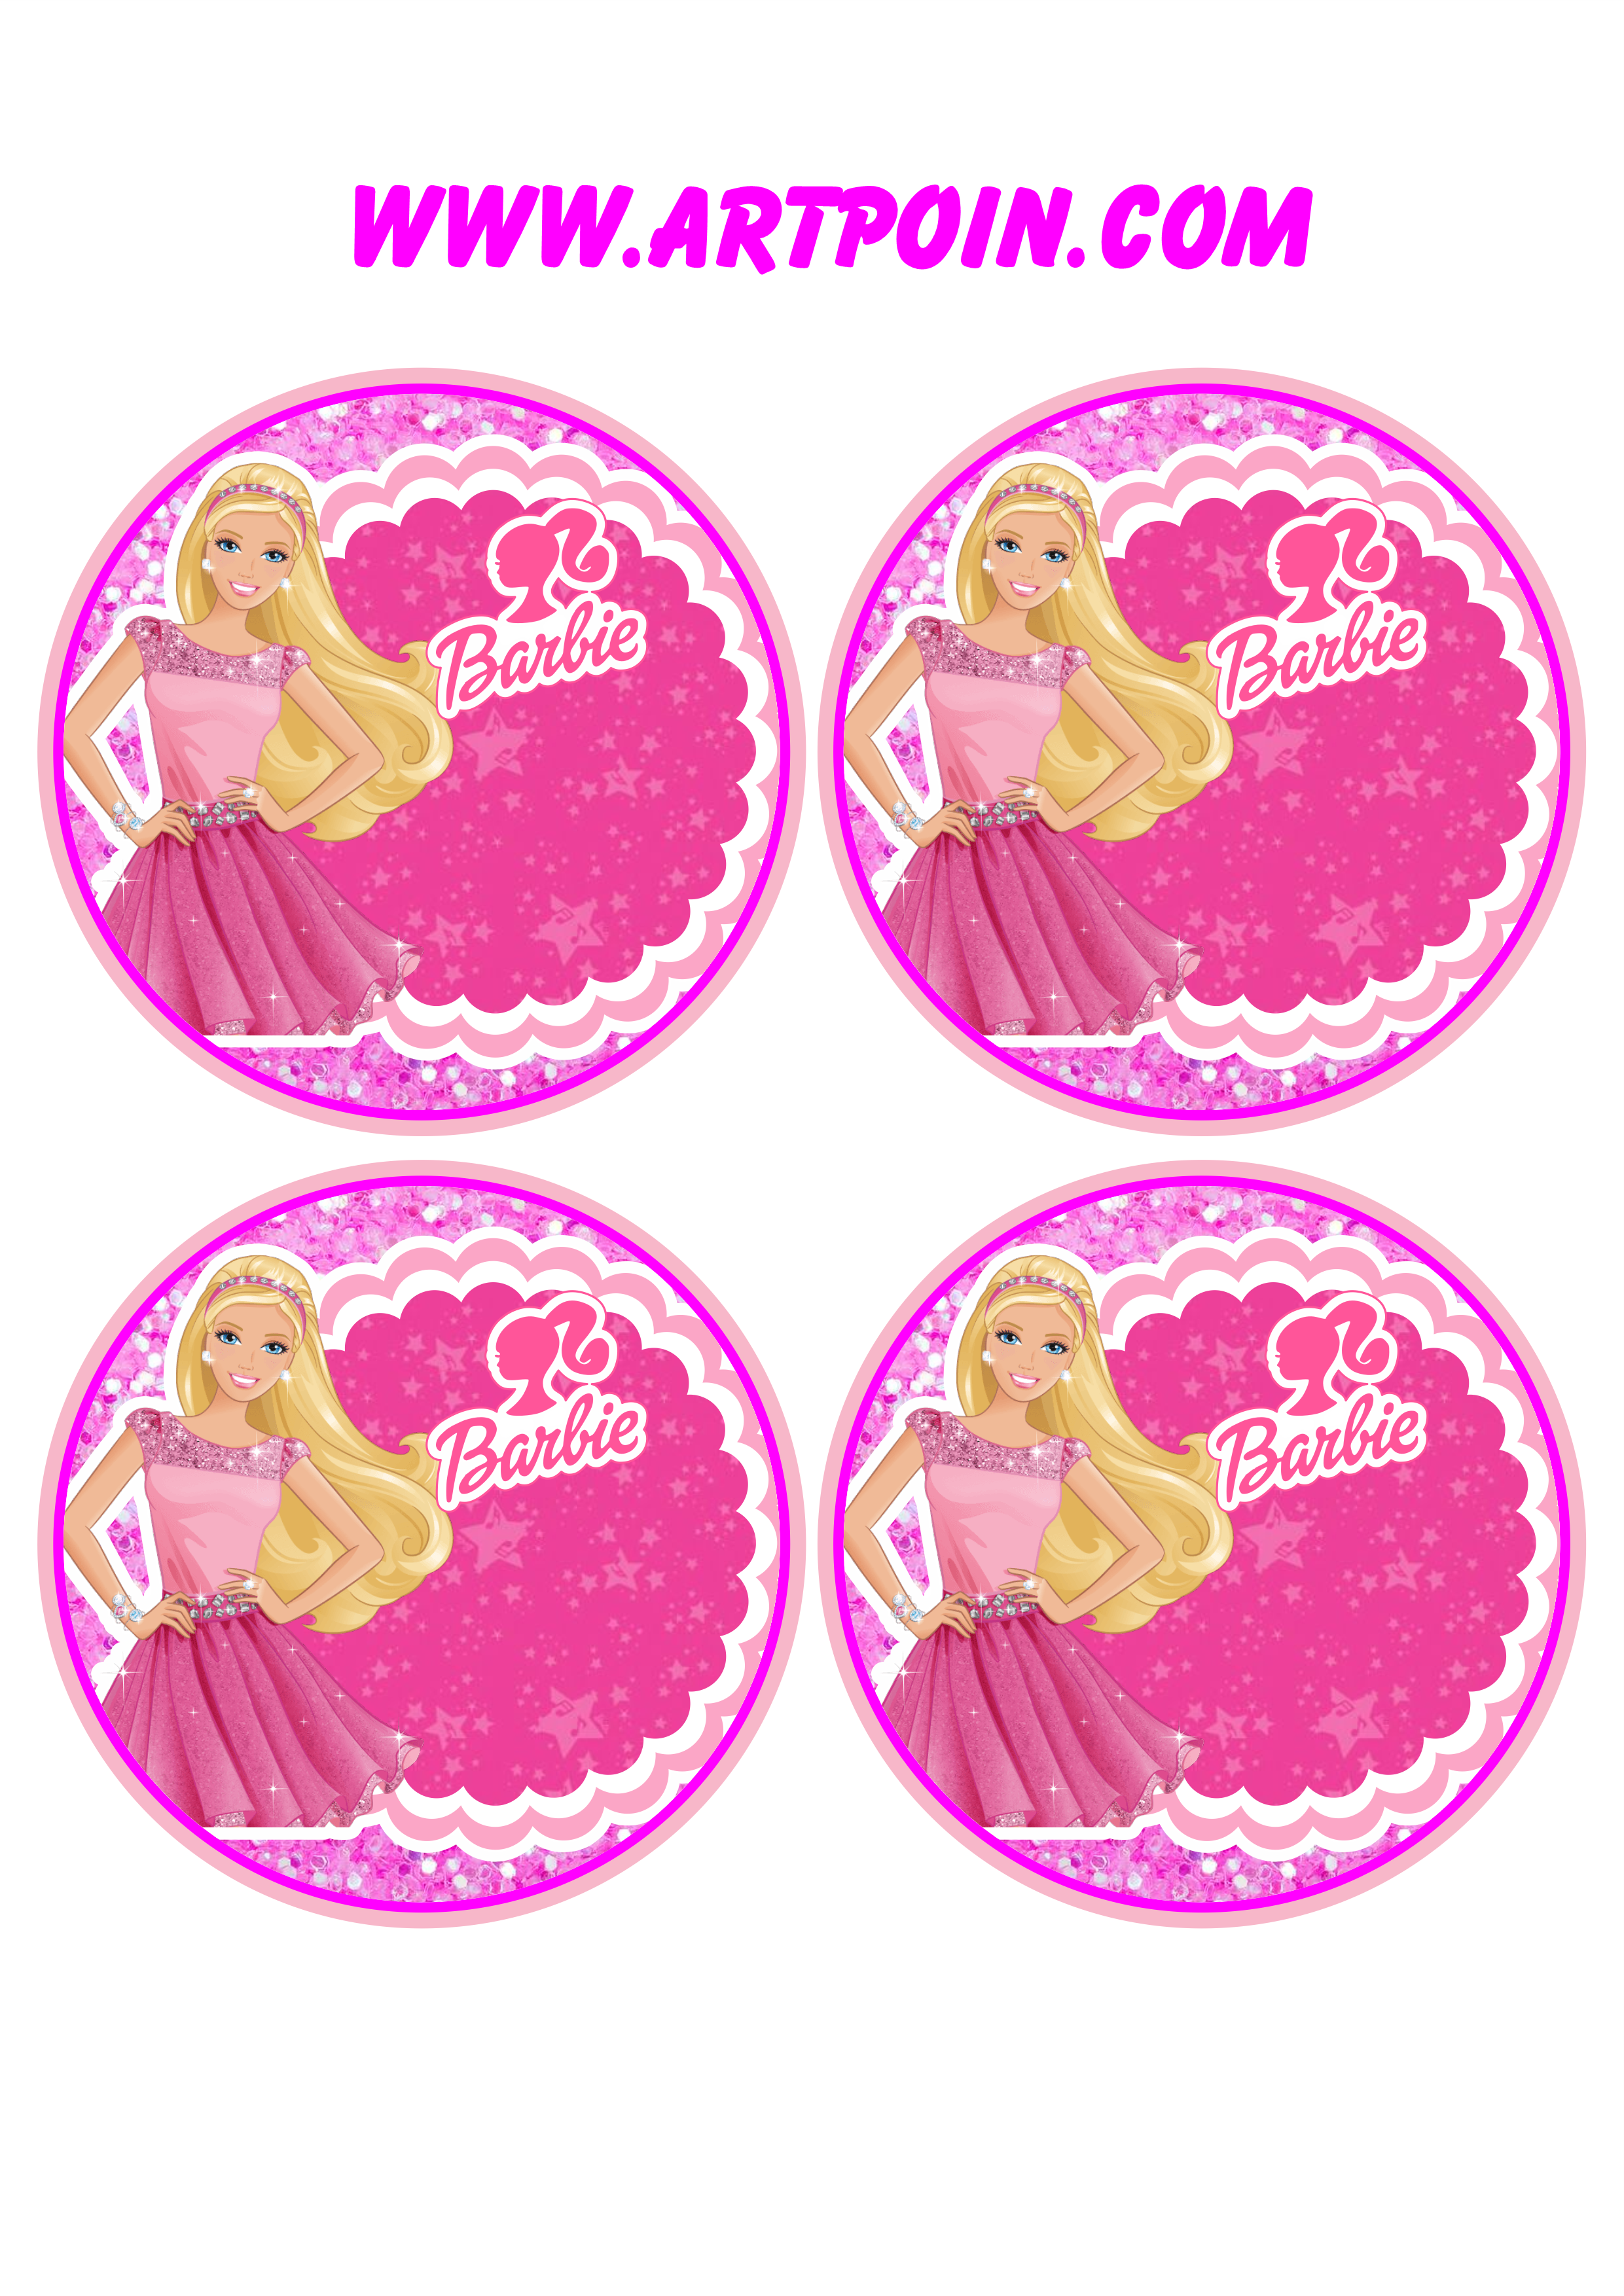 Boneca Barbie adesivo sticker redondo pronto para editar e imprimir 4 imagens png